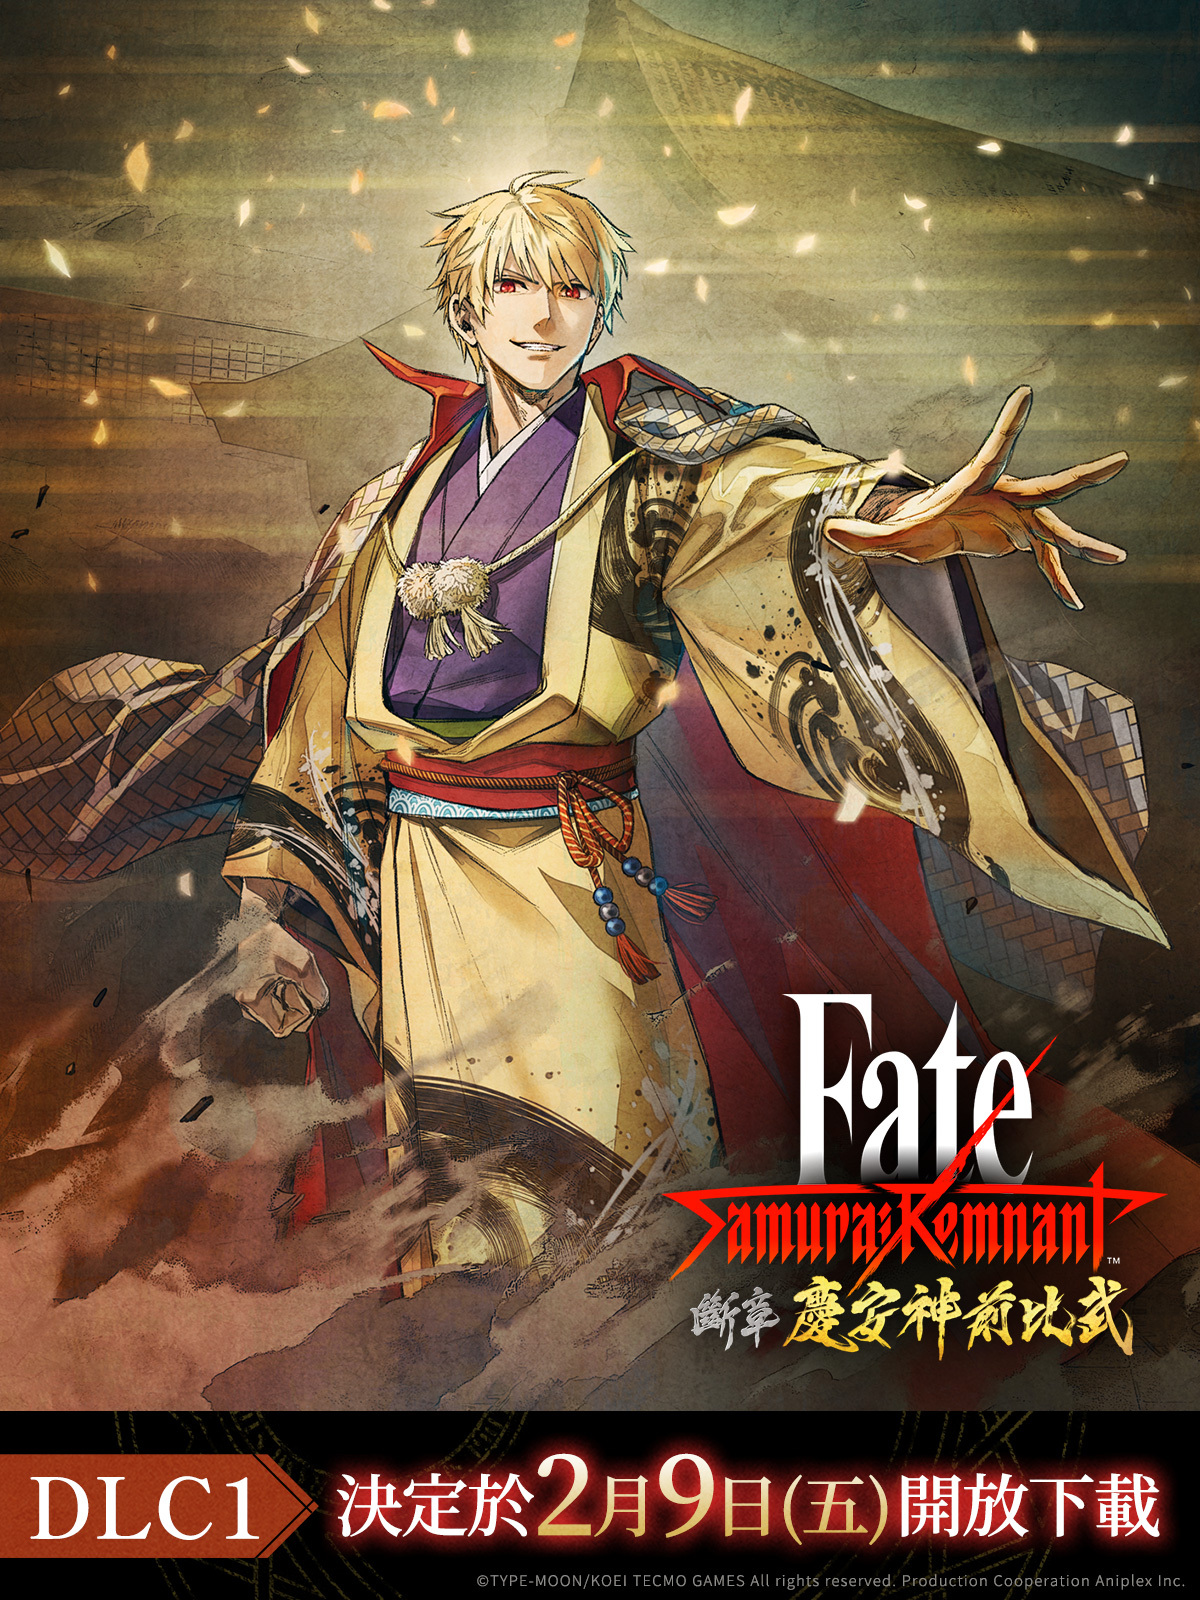 《Fate/Samurai Remnant》首个DLC宣布2月9日发售